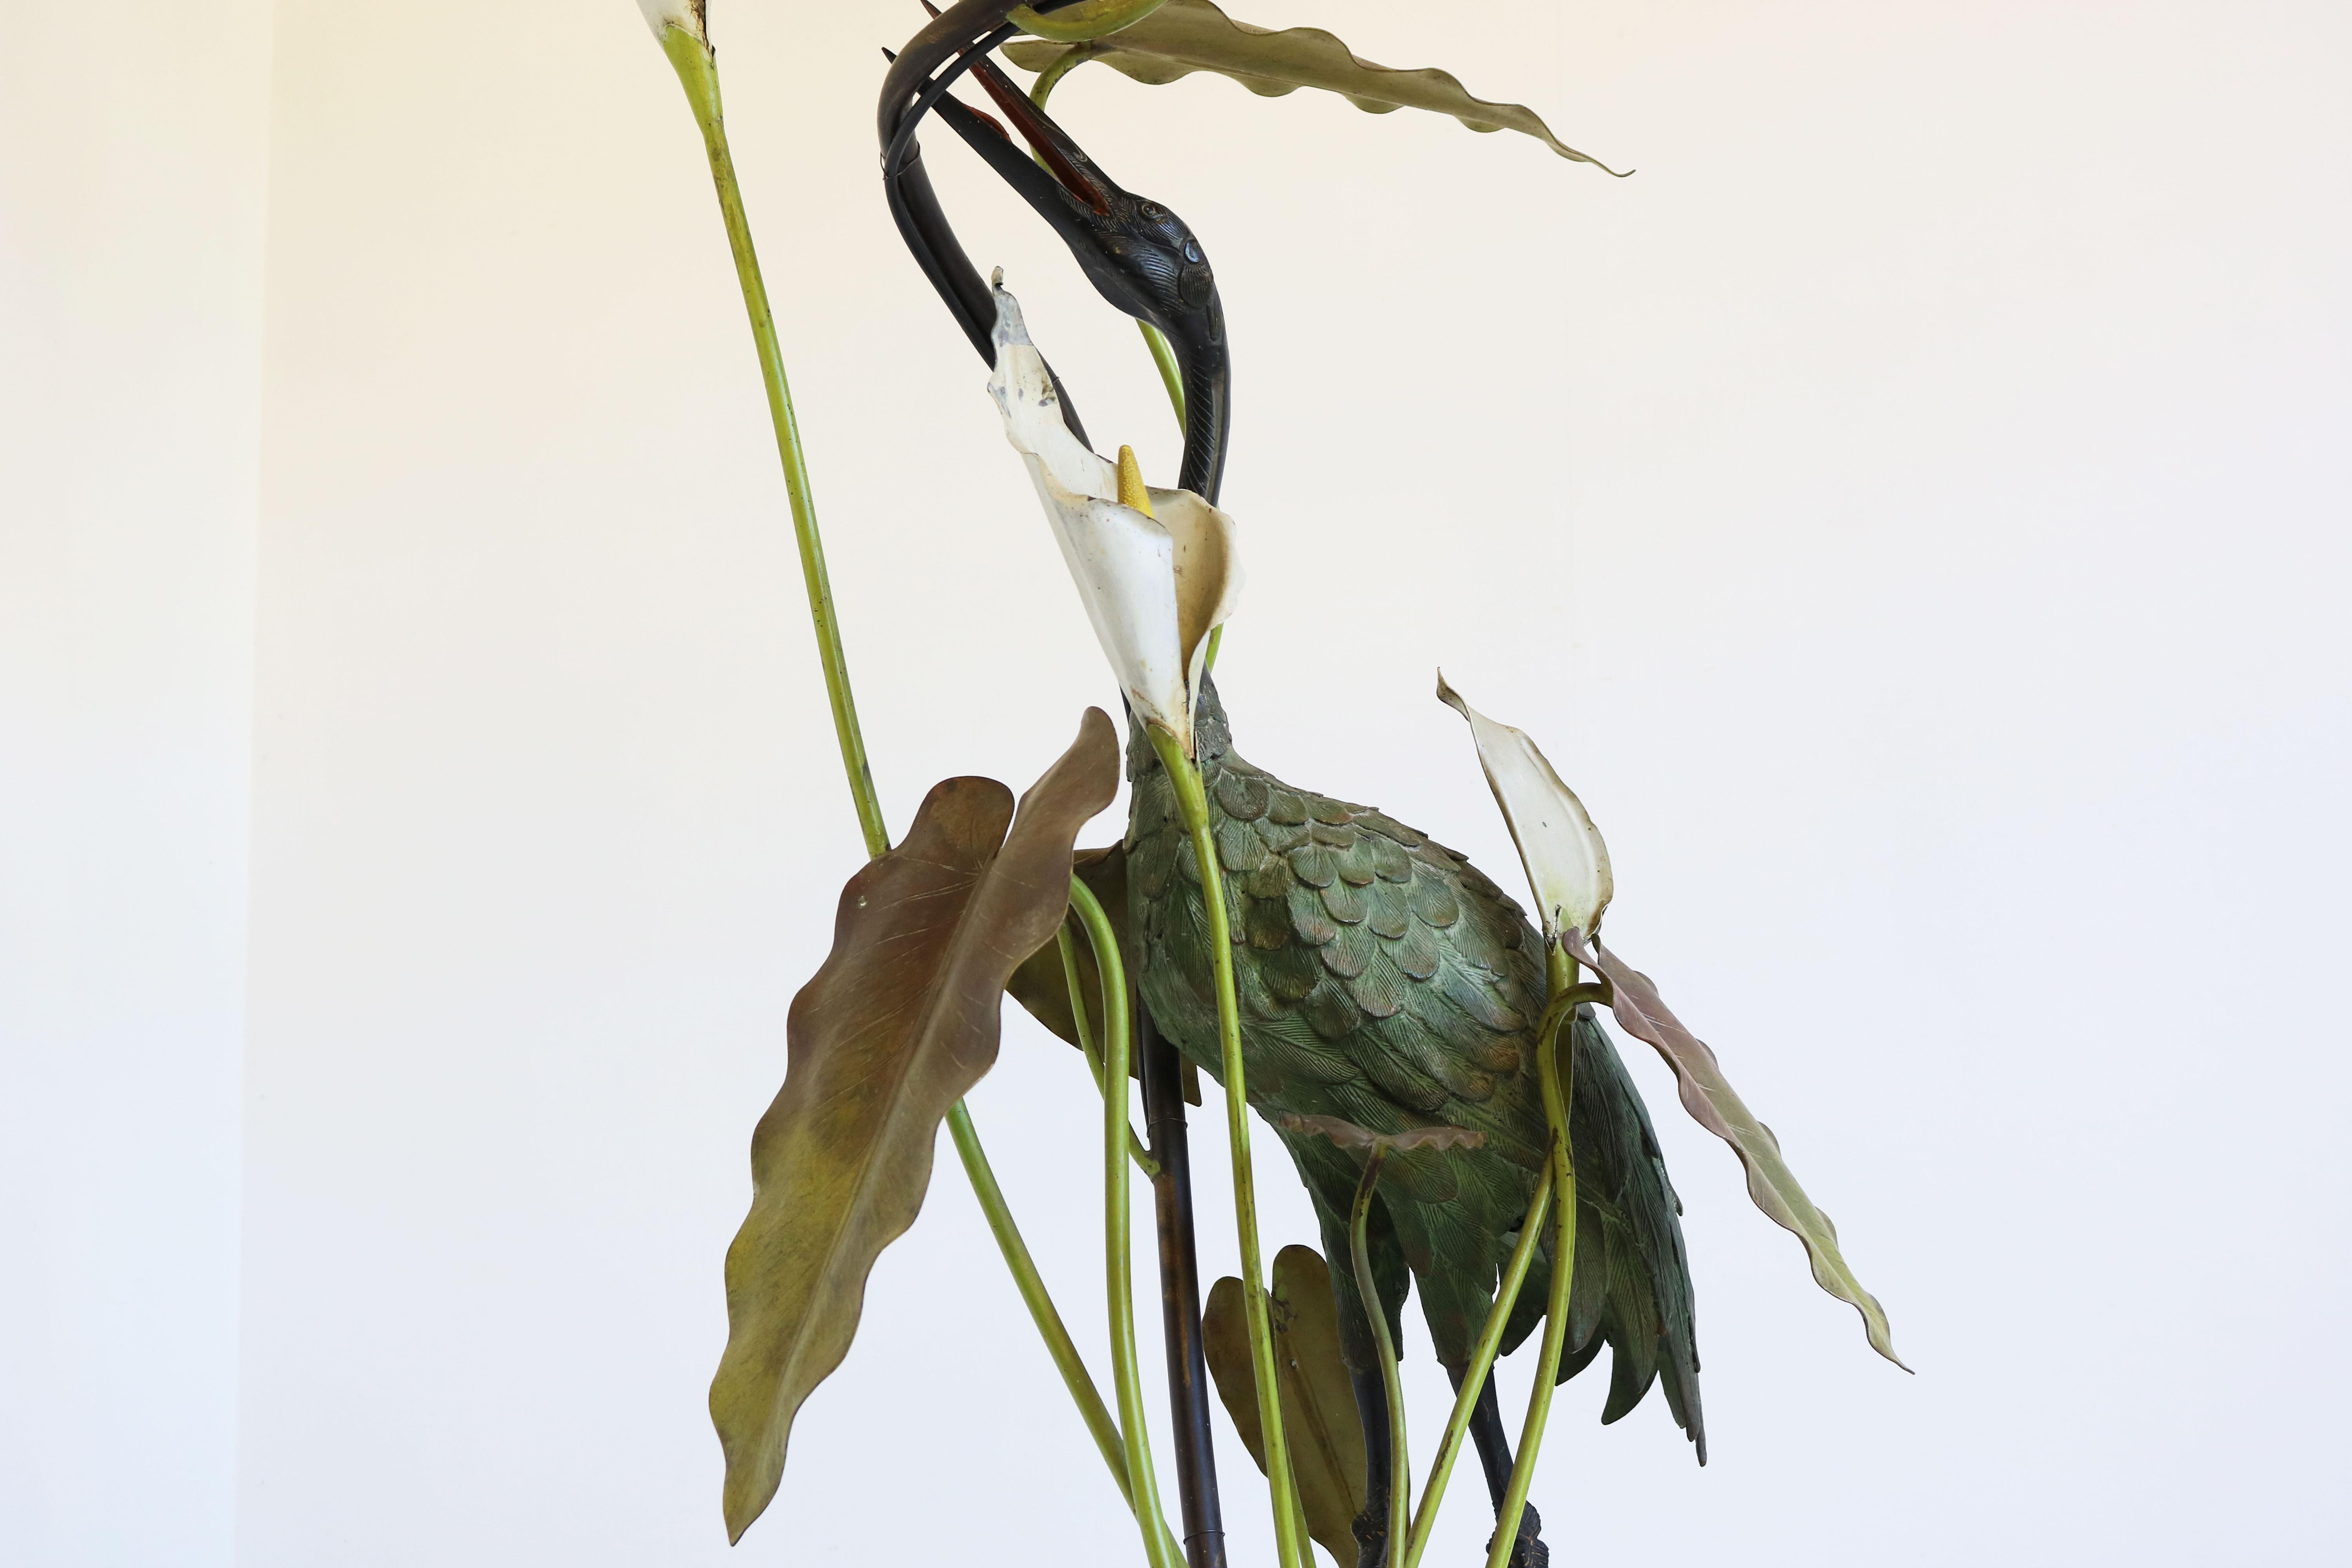 Exquis et rare ! Ce lampadaire Art Nouveau français en bronze patiné présentant un Héron entre des feuilles et des pampilles, daté du début 1900. 
Le héron se tient au-dessus d'un ruisseau d'eau caché entre les feuilles et les fleurs. Étonnant